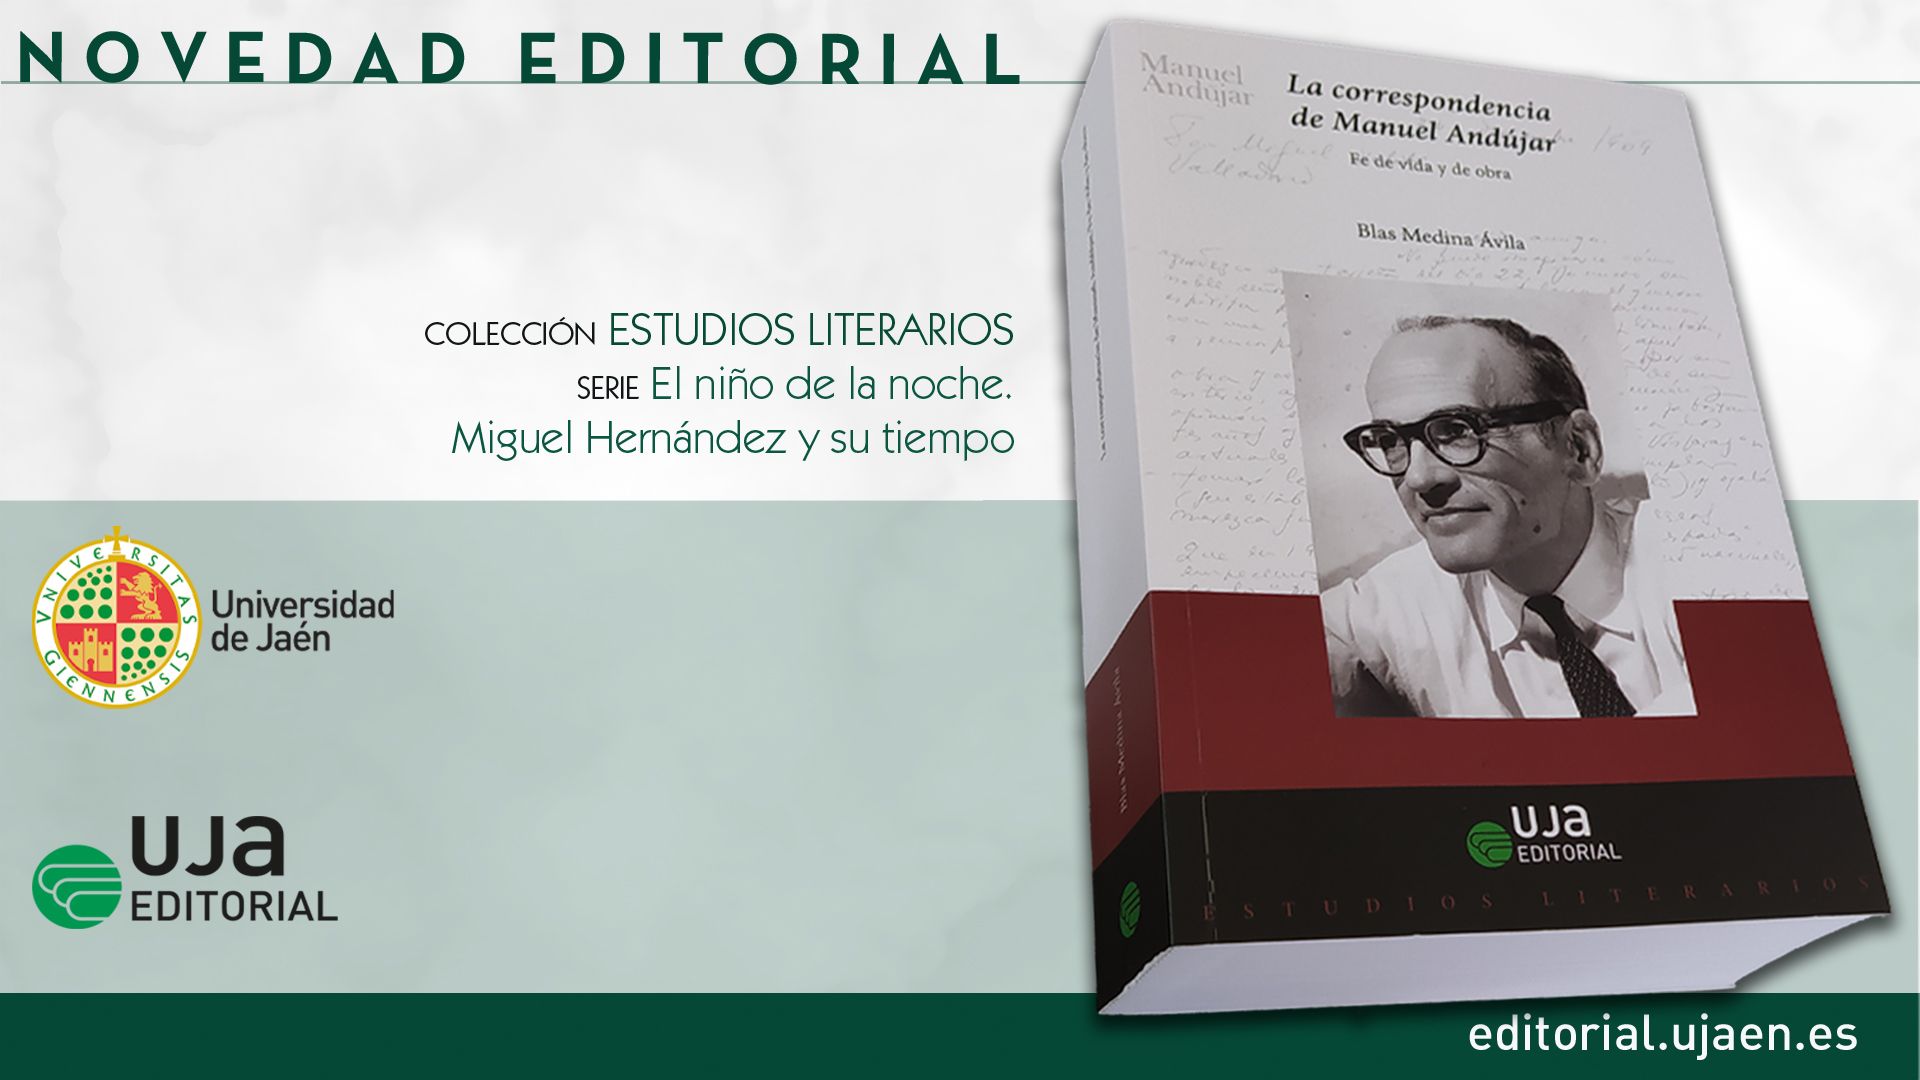 UJA EDITORIAL PUBLICA ‘LA CORRESPONDENCIA DE MANUEL ANDÚJAR: FE DE VIDA Y DE OBRA’